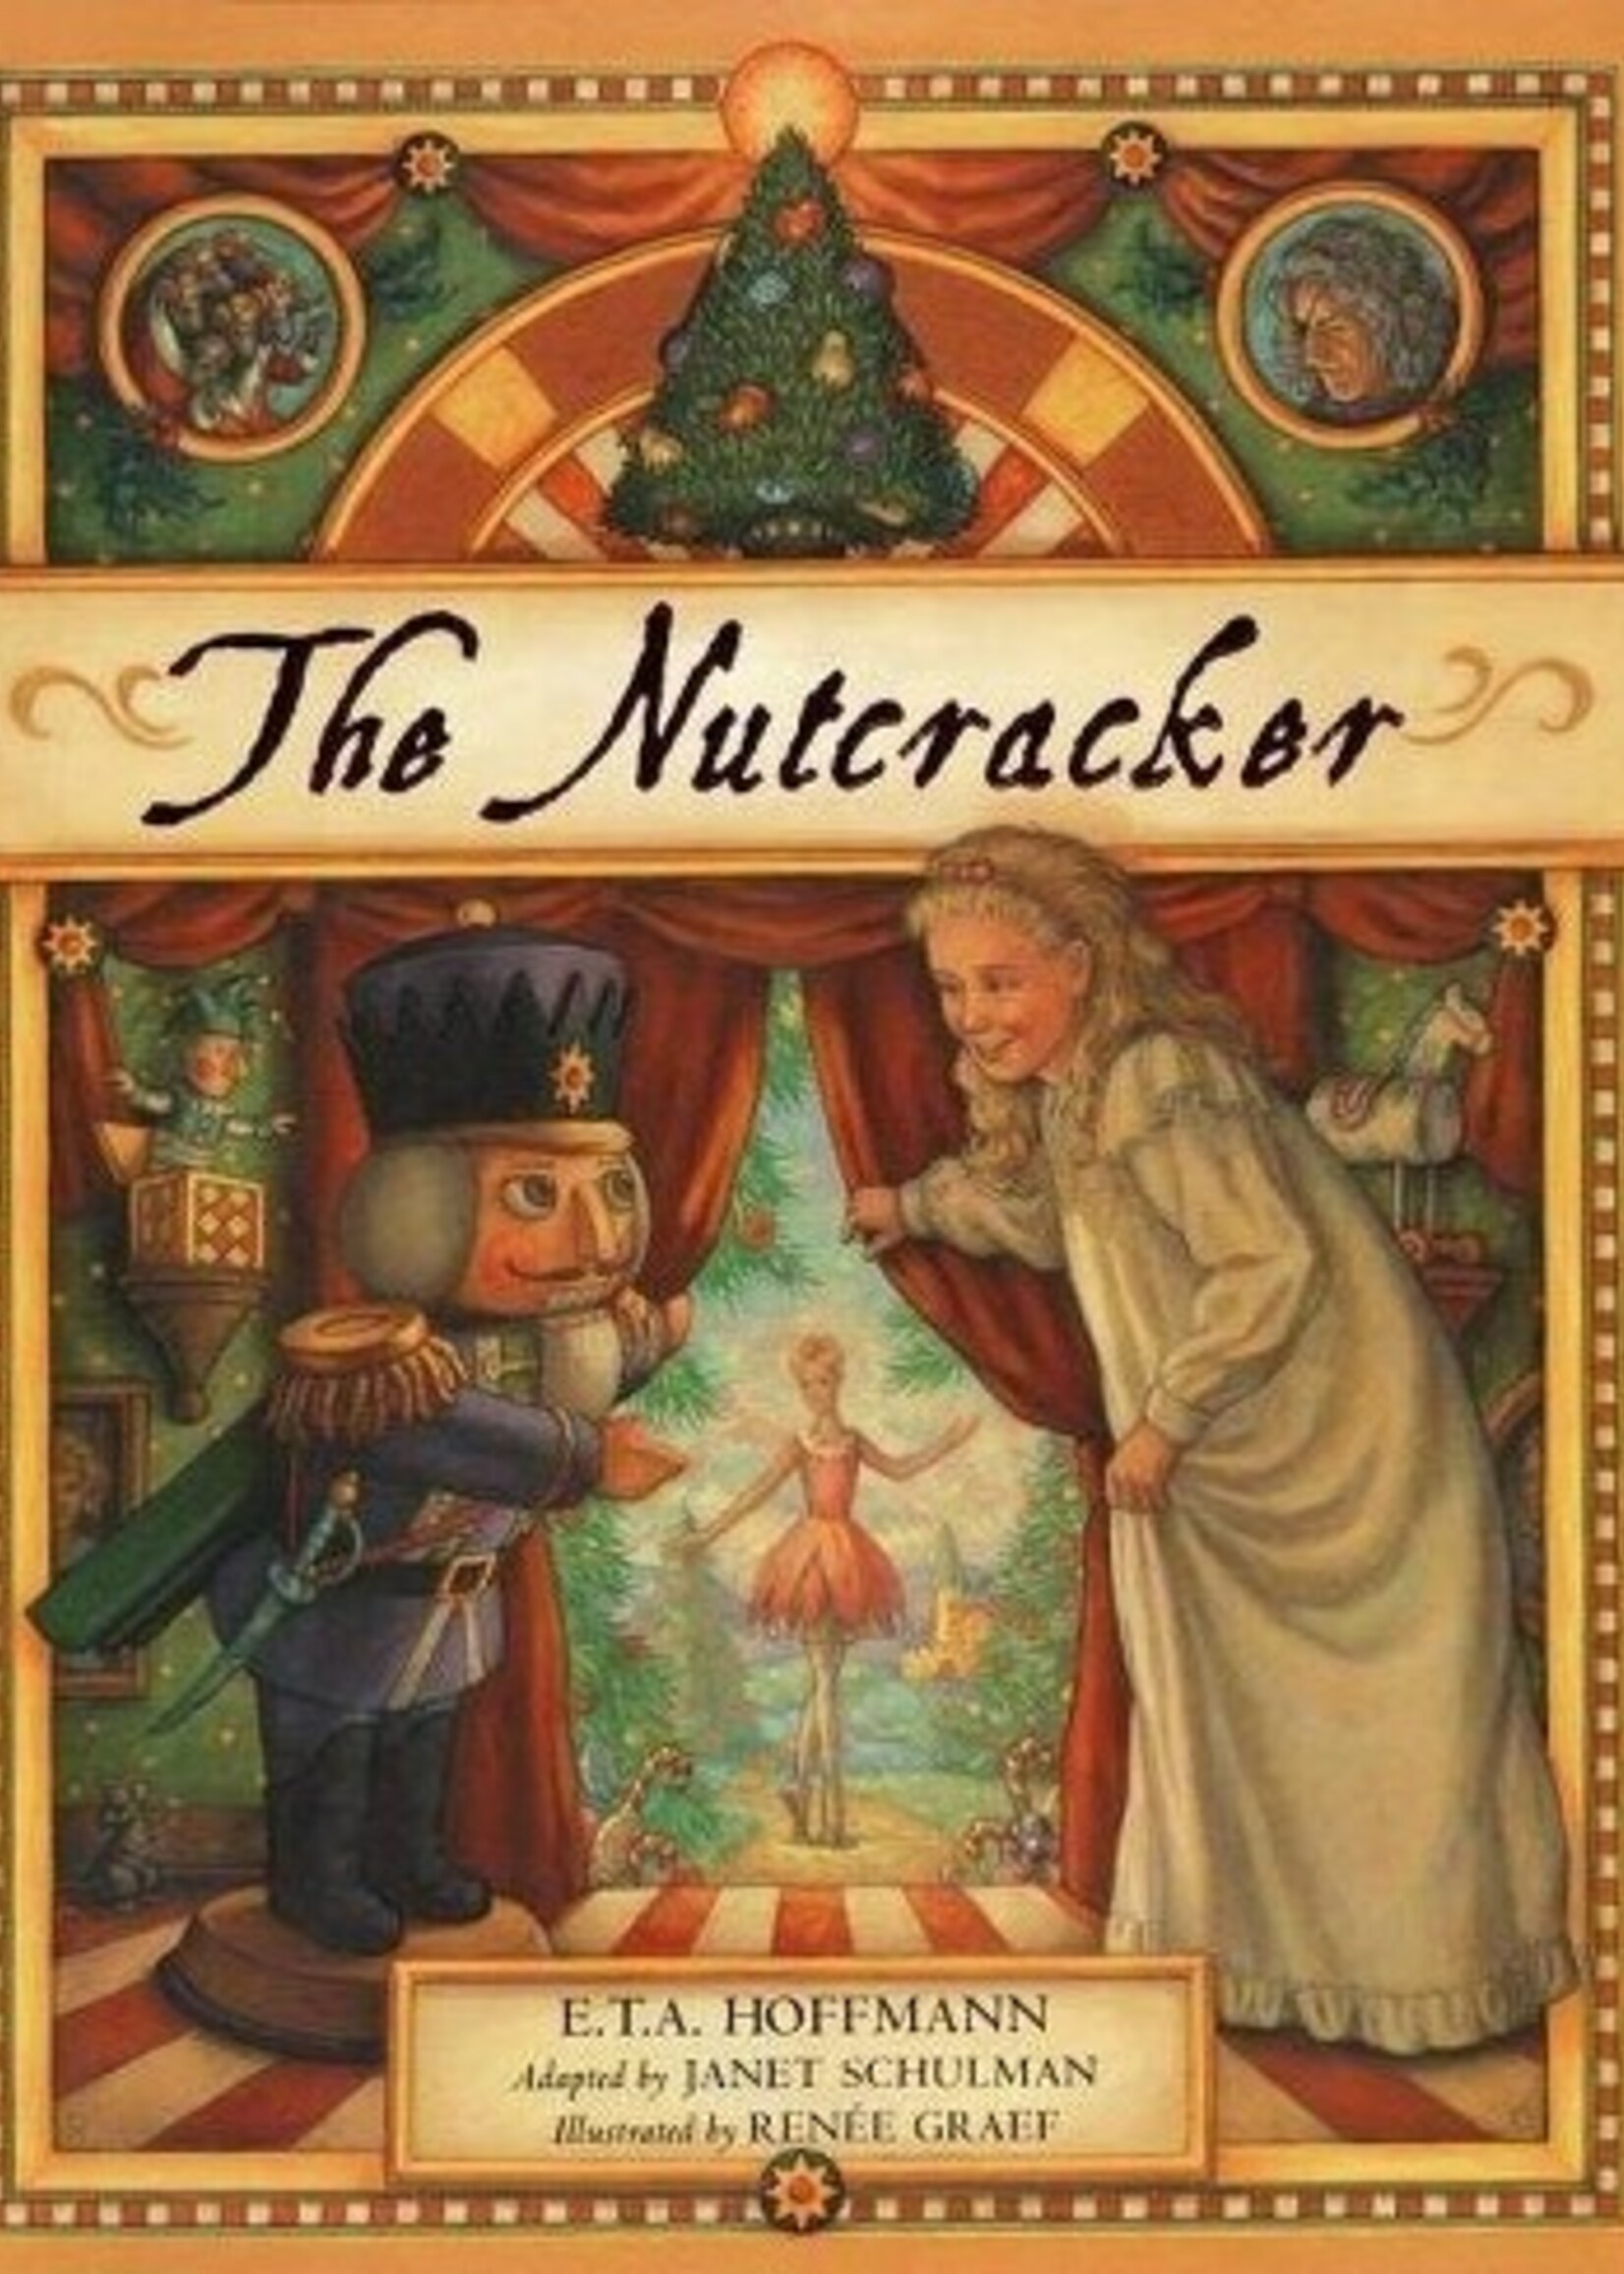 Nutcracker Book